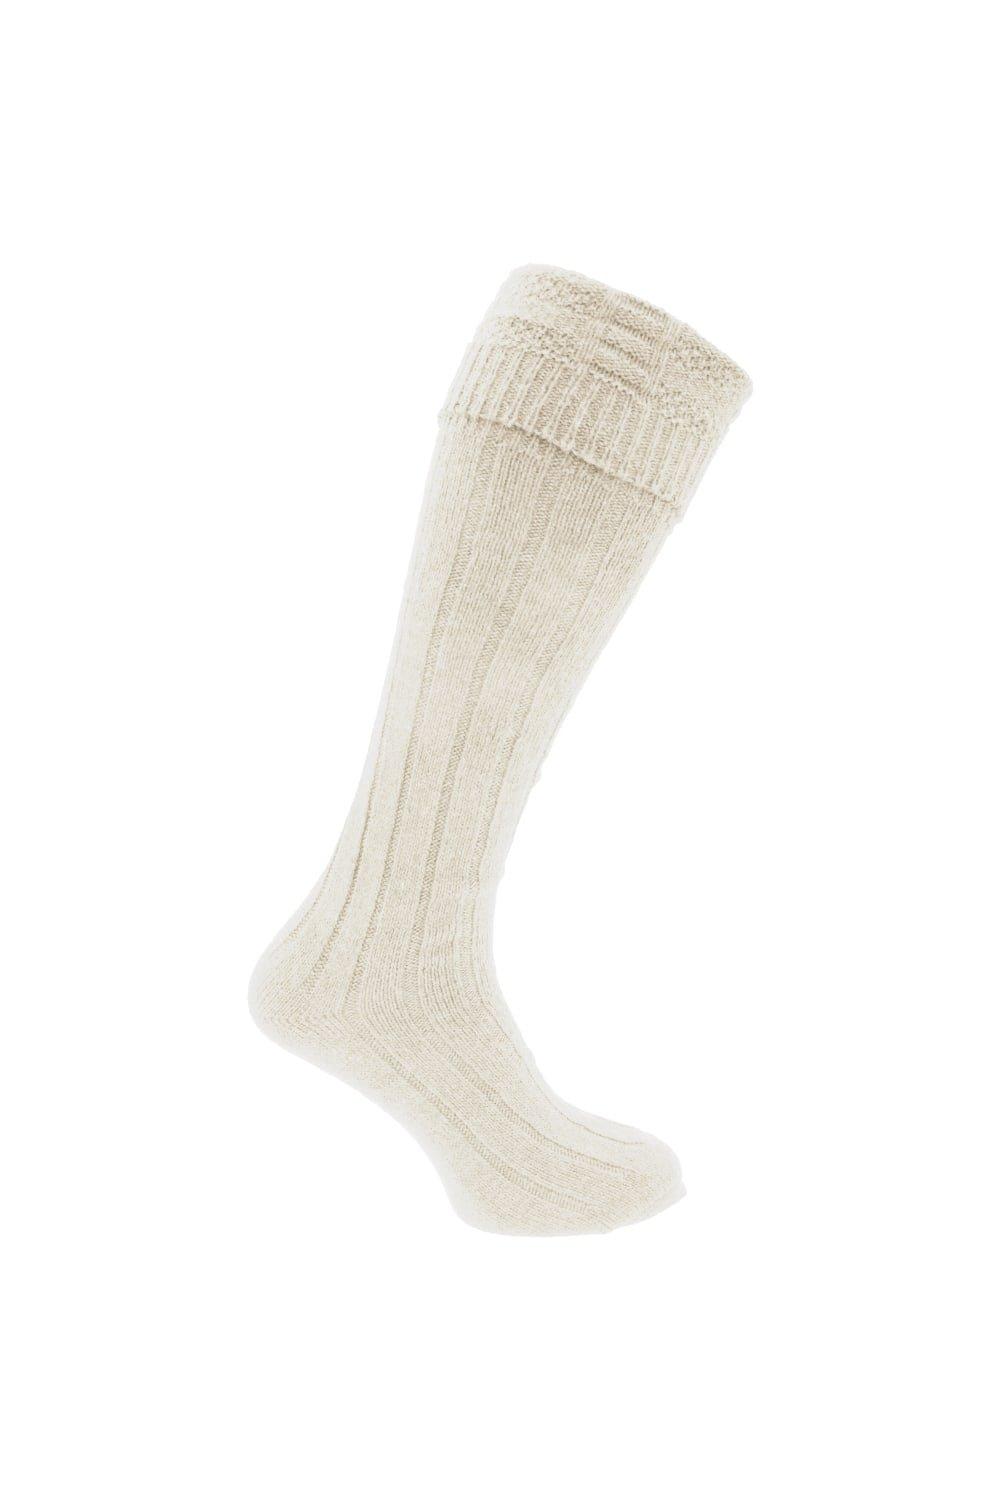 Scottish Highland Wear Wool Kilt Hose Socks (1 Pair)